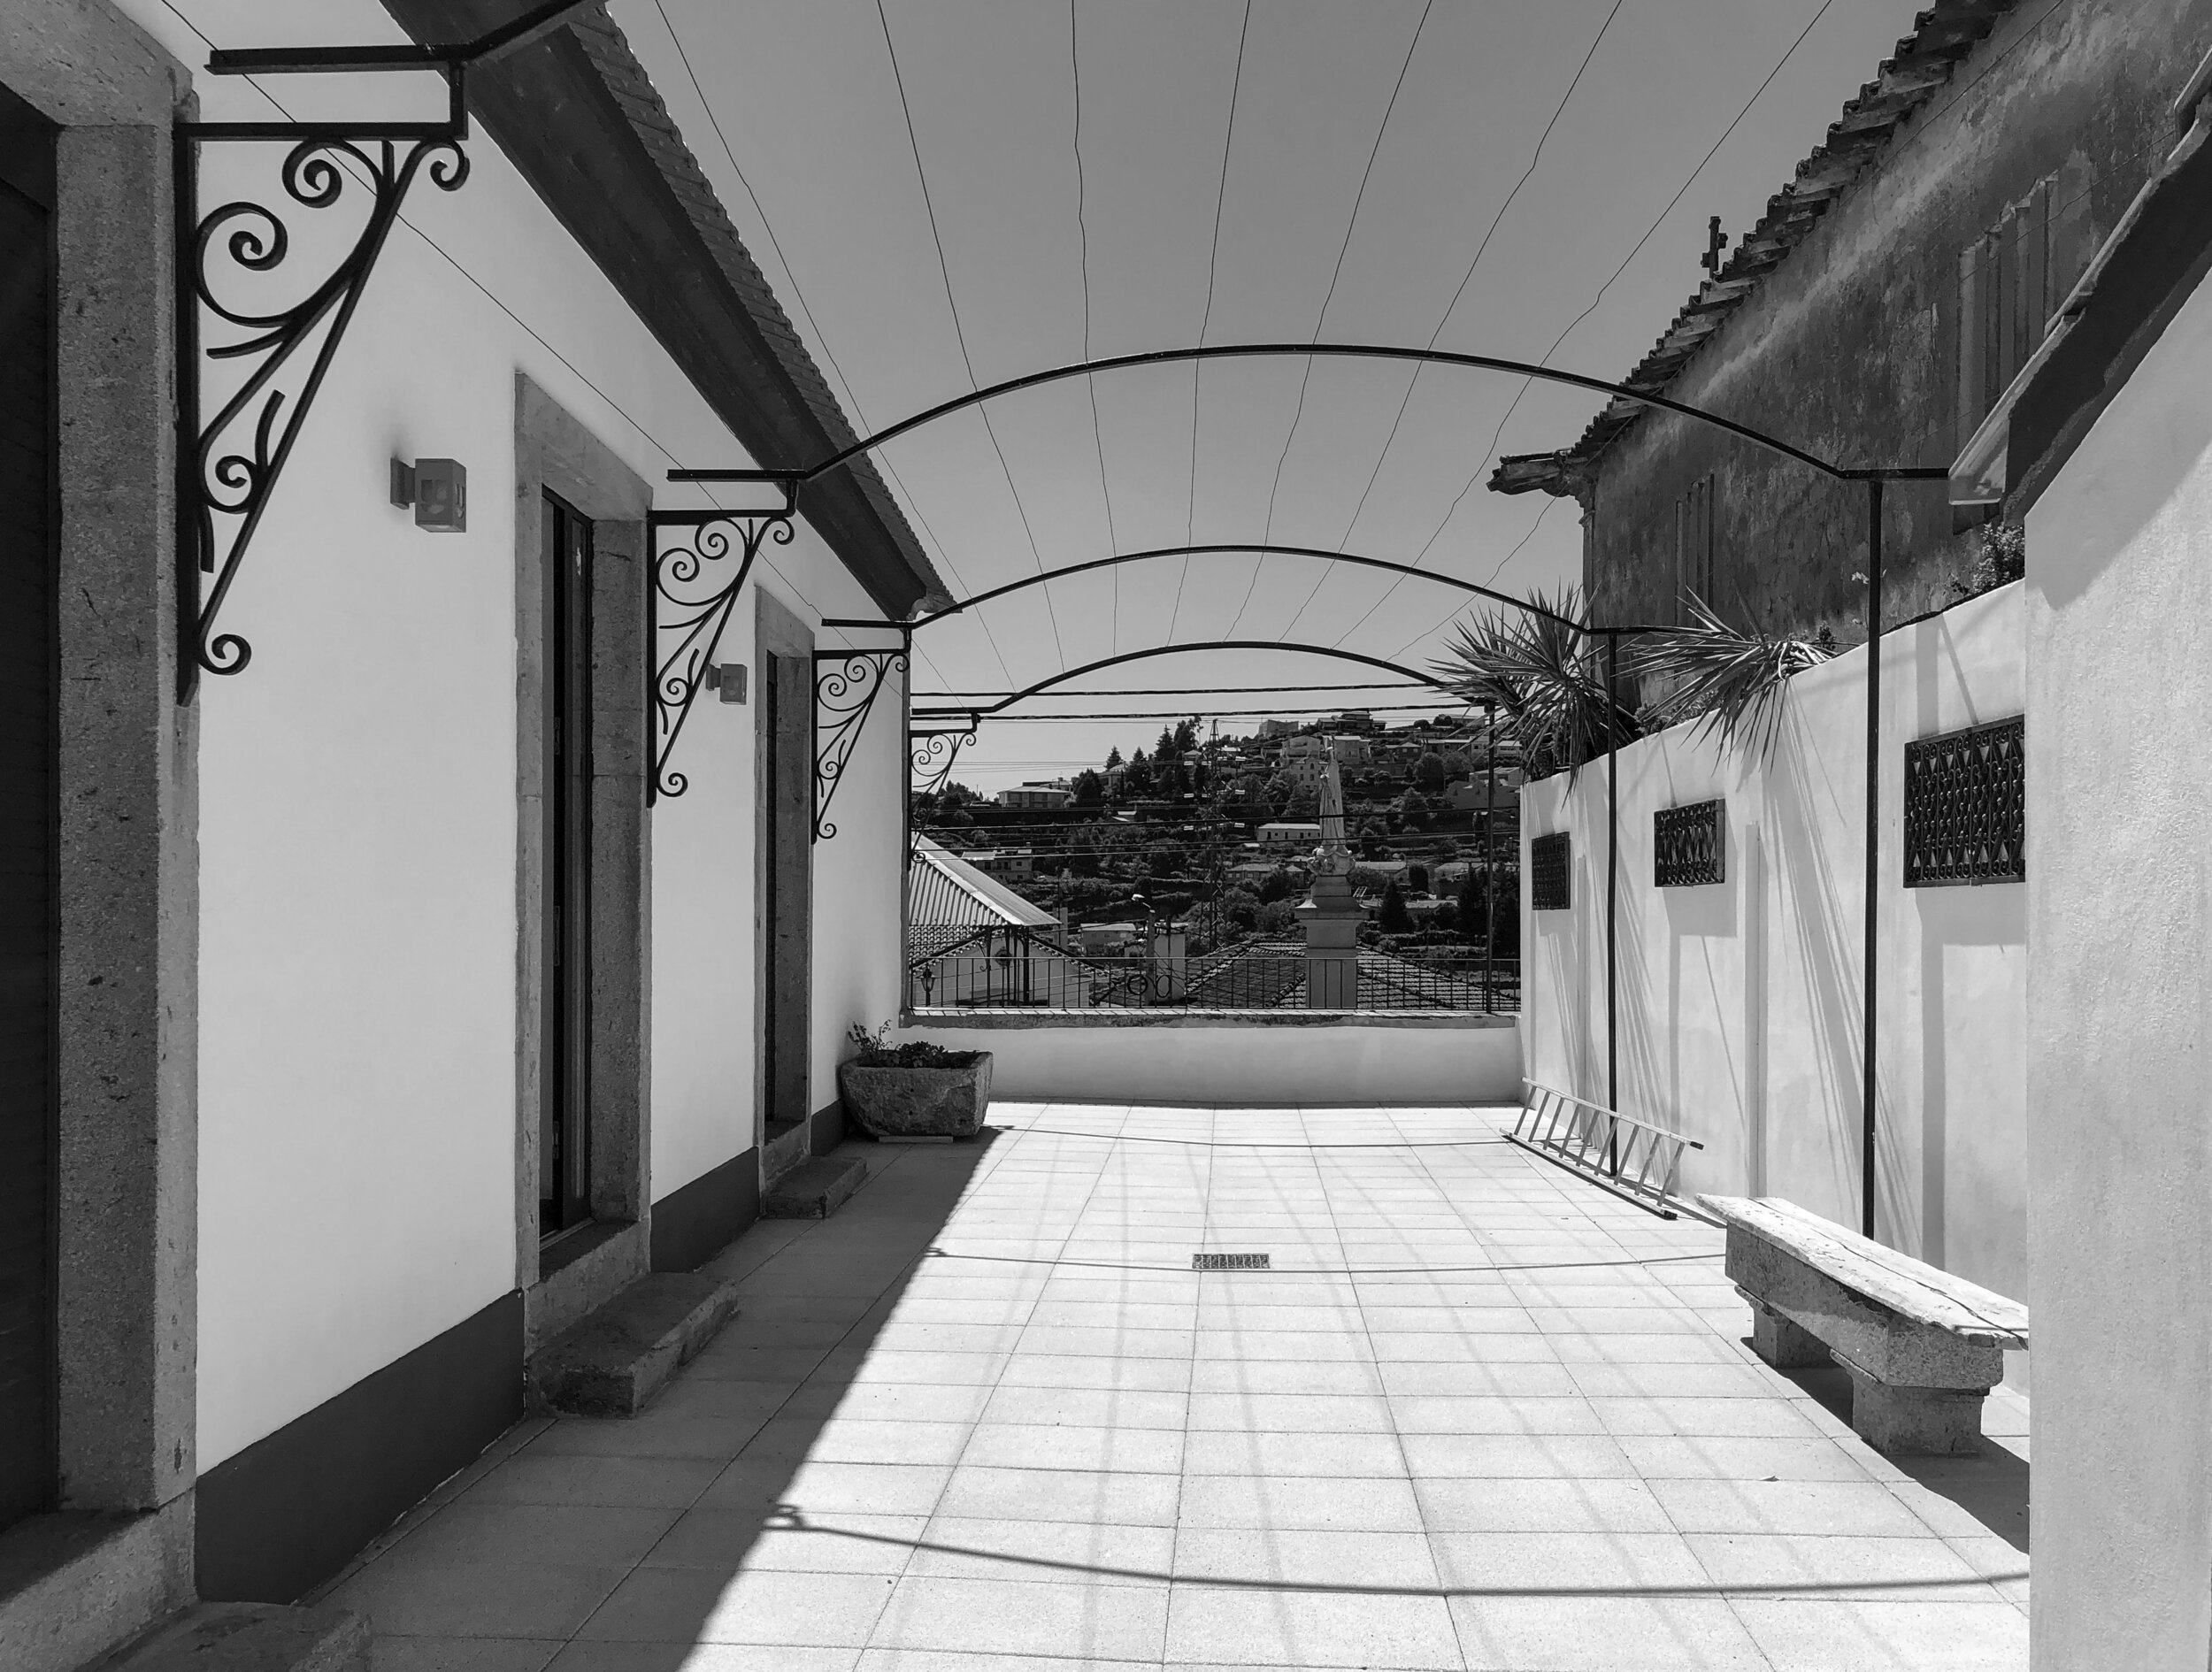 Moradia Coelhosa - eva atelier - evolutionary acrchitecture - vale de cambra - remodelação - arquitectura (1).jpg